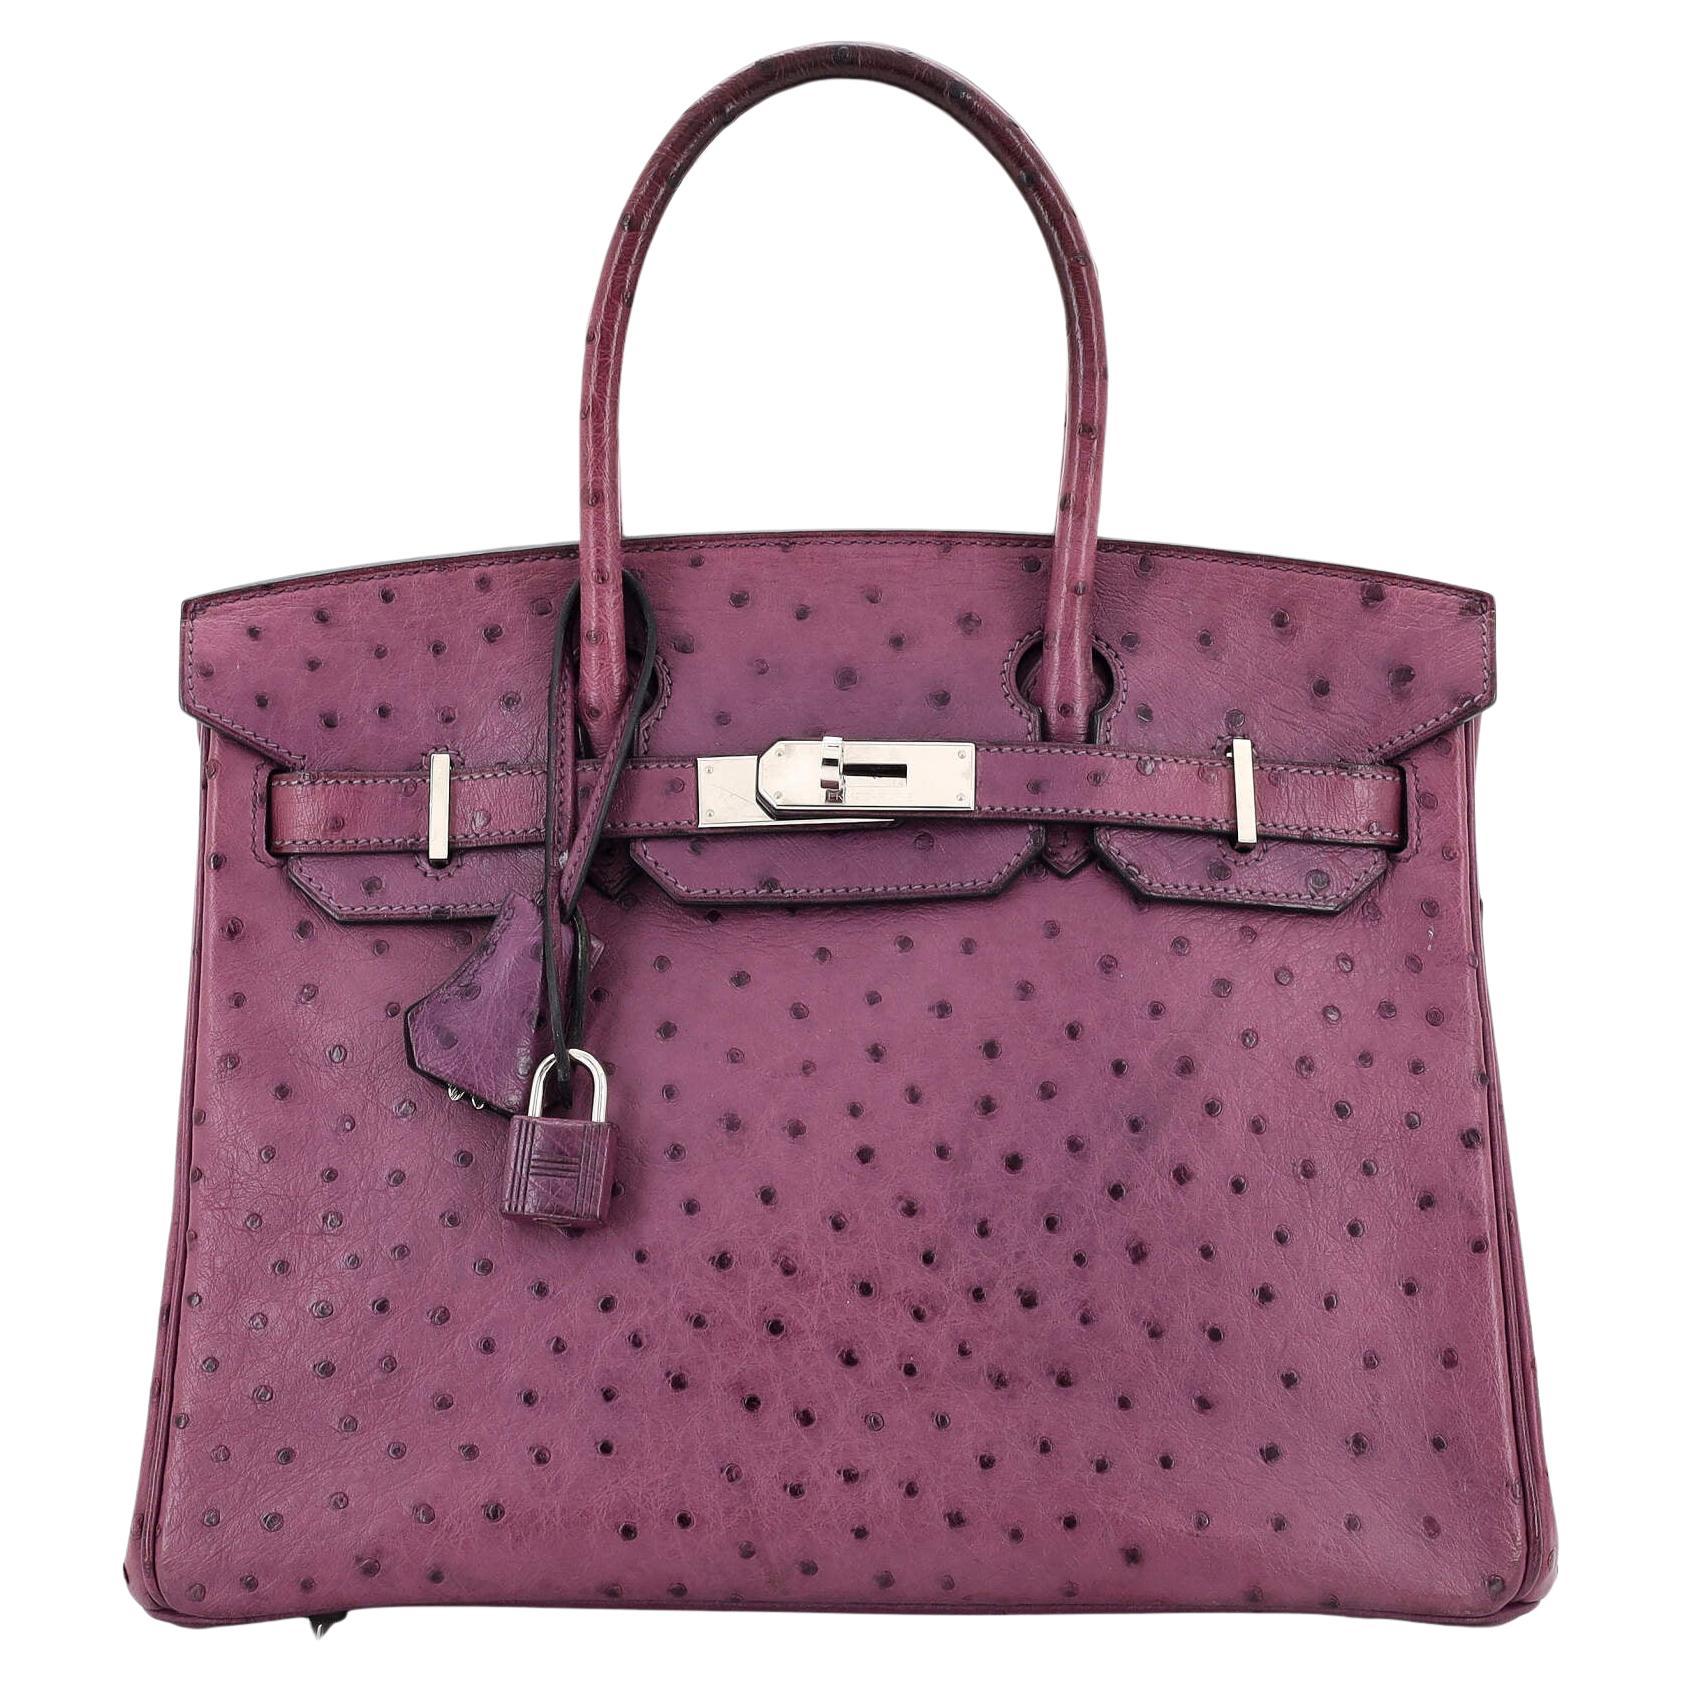 Hermes Birkin Handbag Violet Ostrich with Palladium Hardware 30